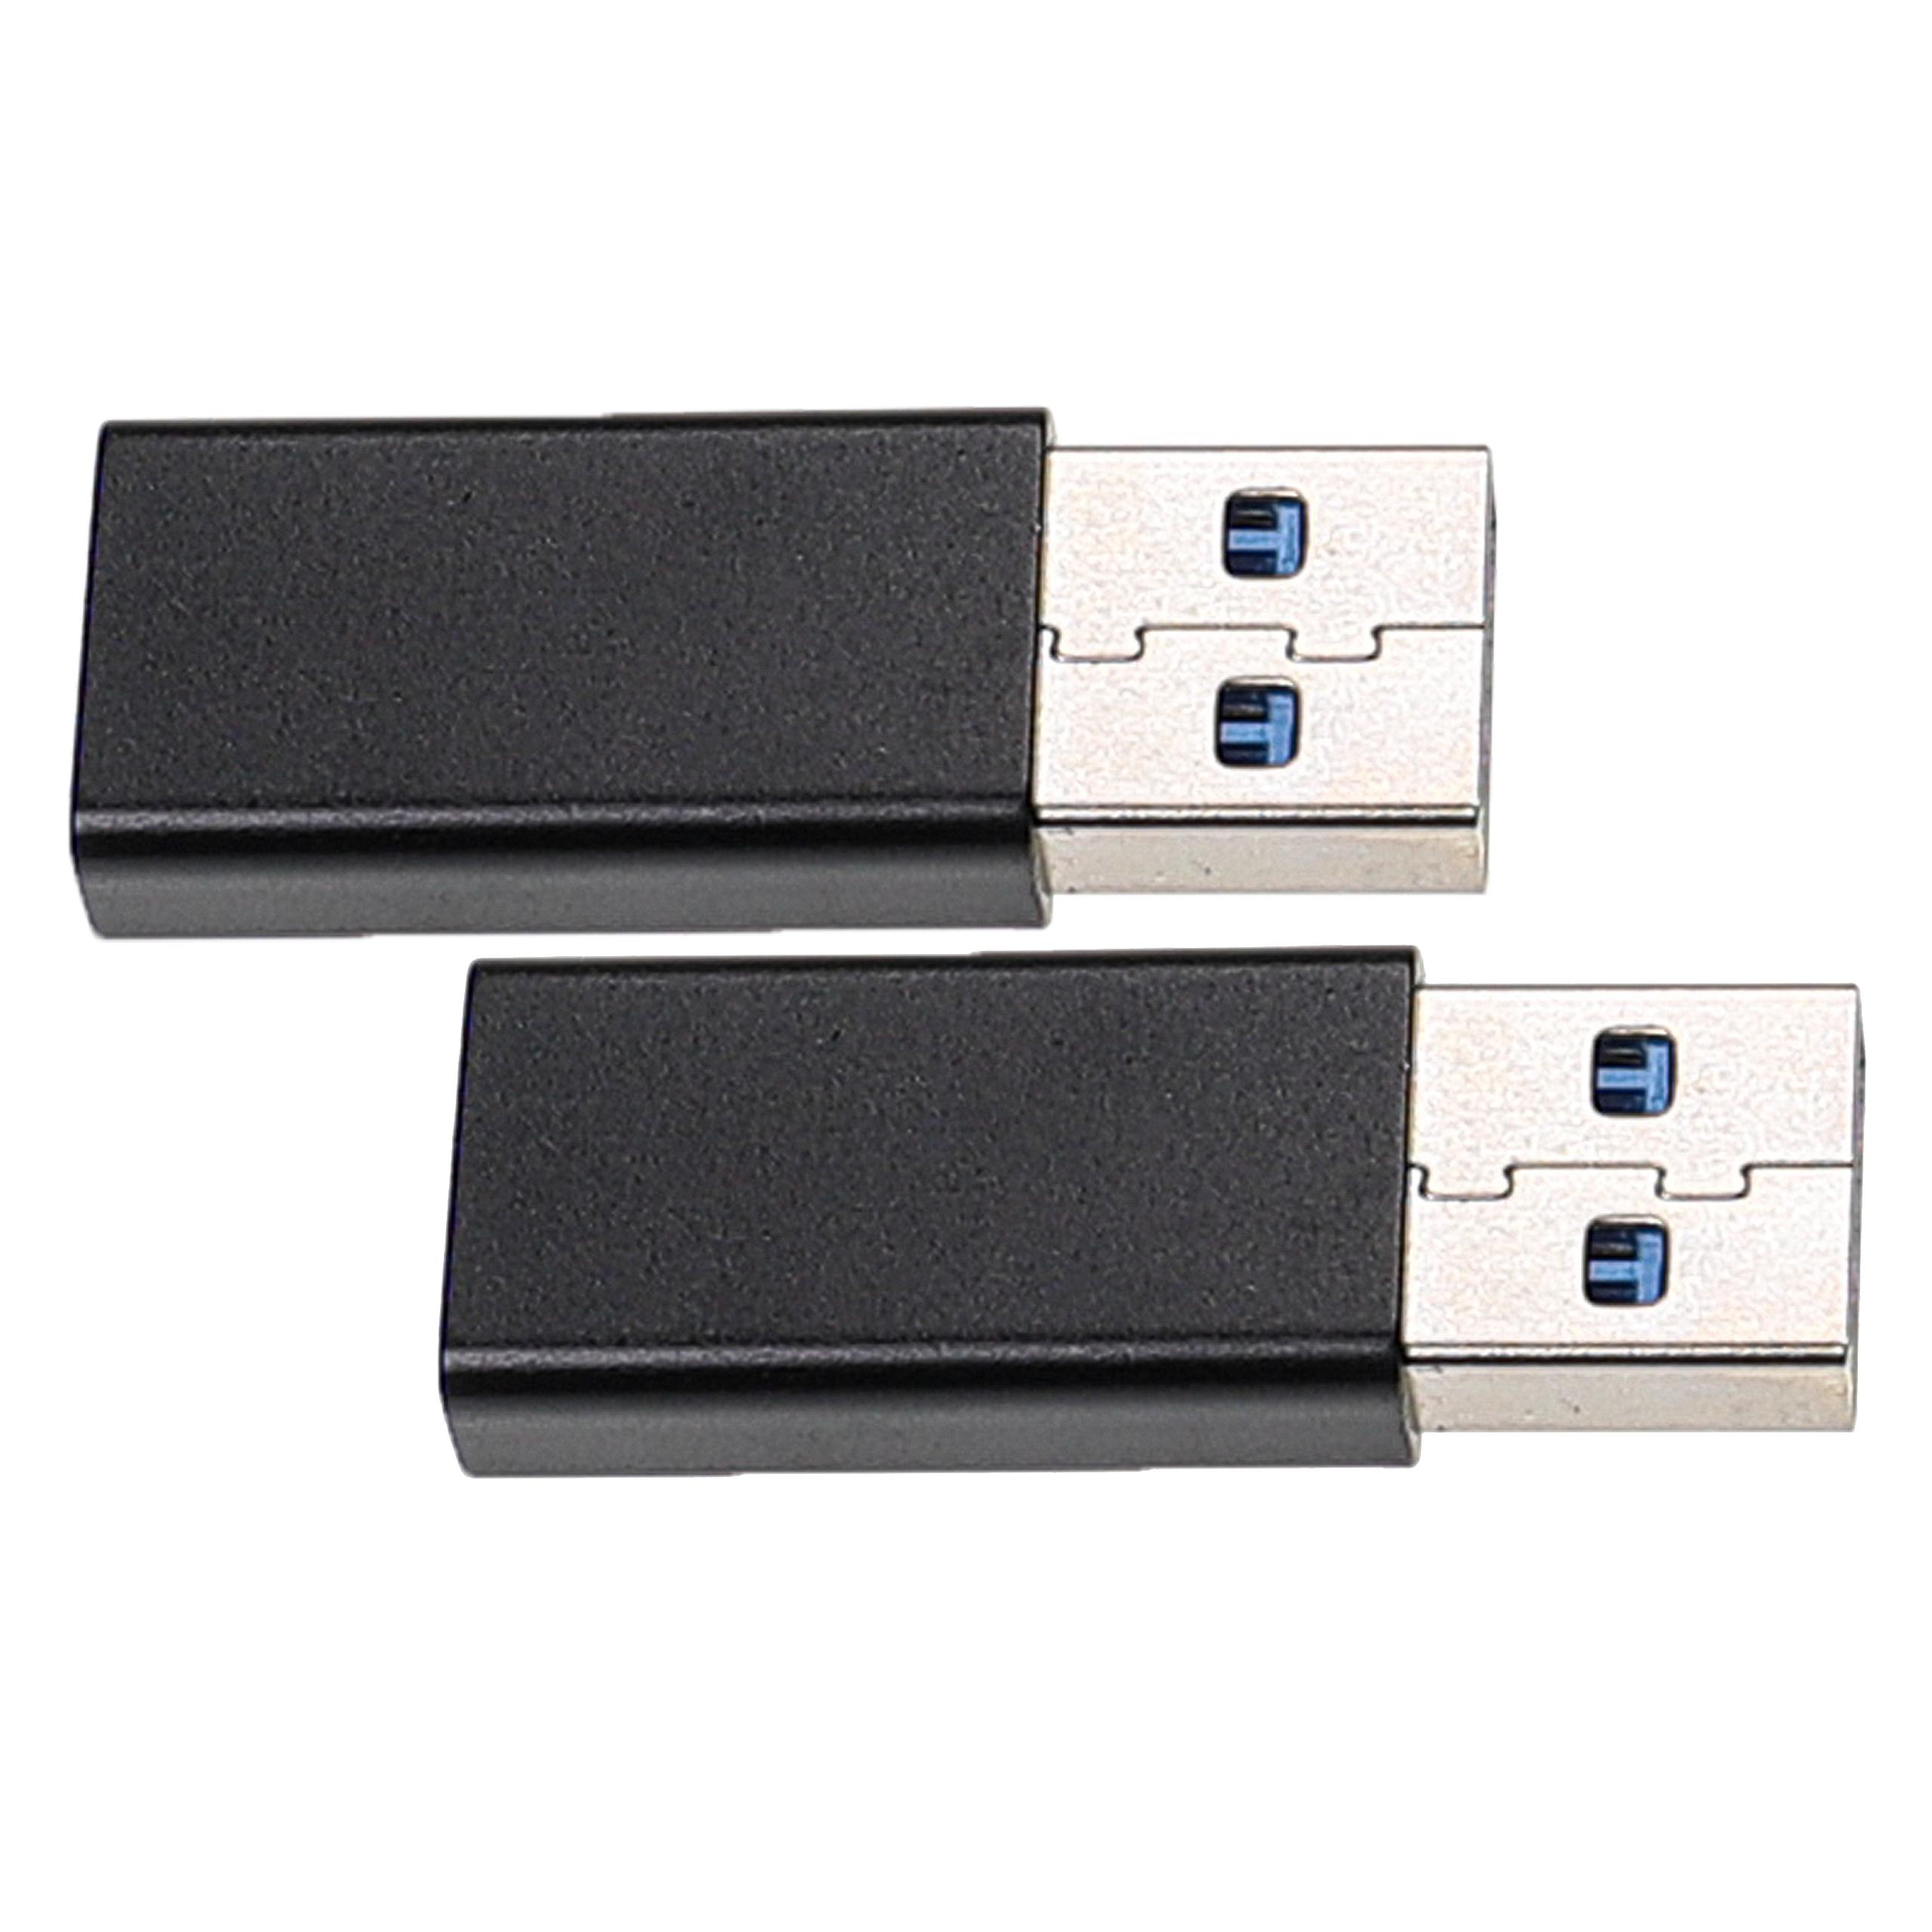 2x Adapter USB C (ż) na USB 3.0 (m) do smartfona, tabletu, laptopa - Adapter USB